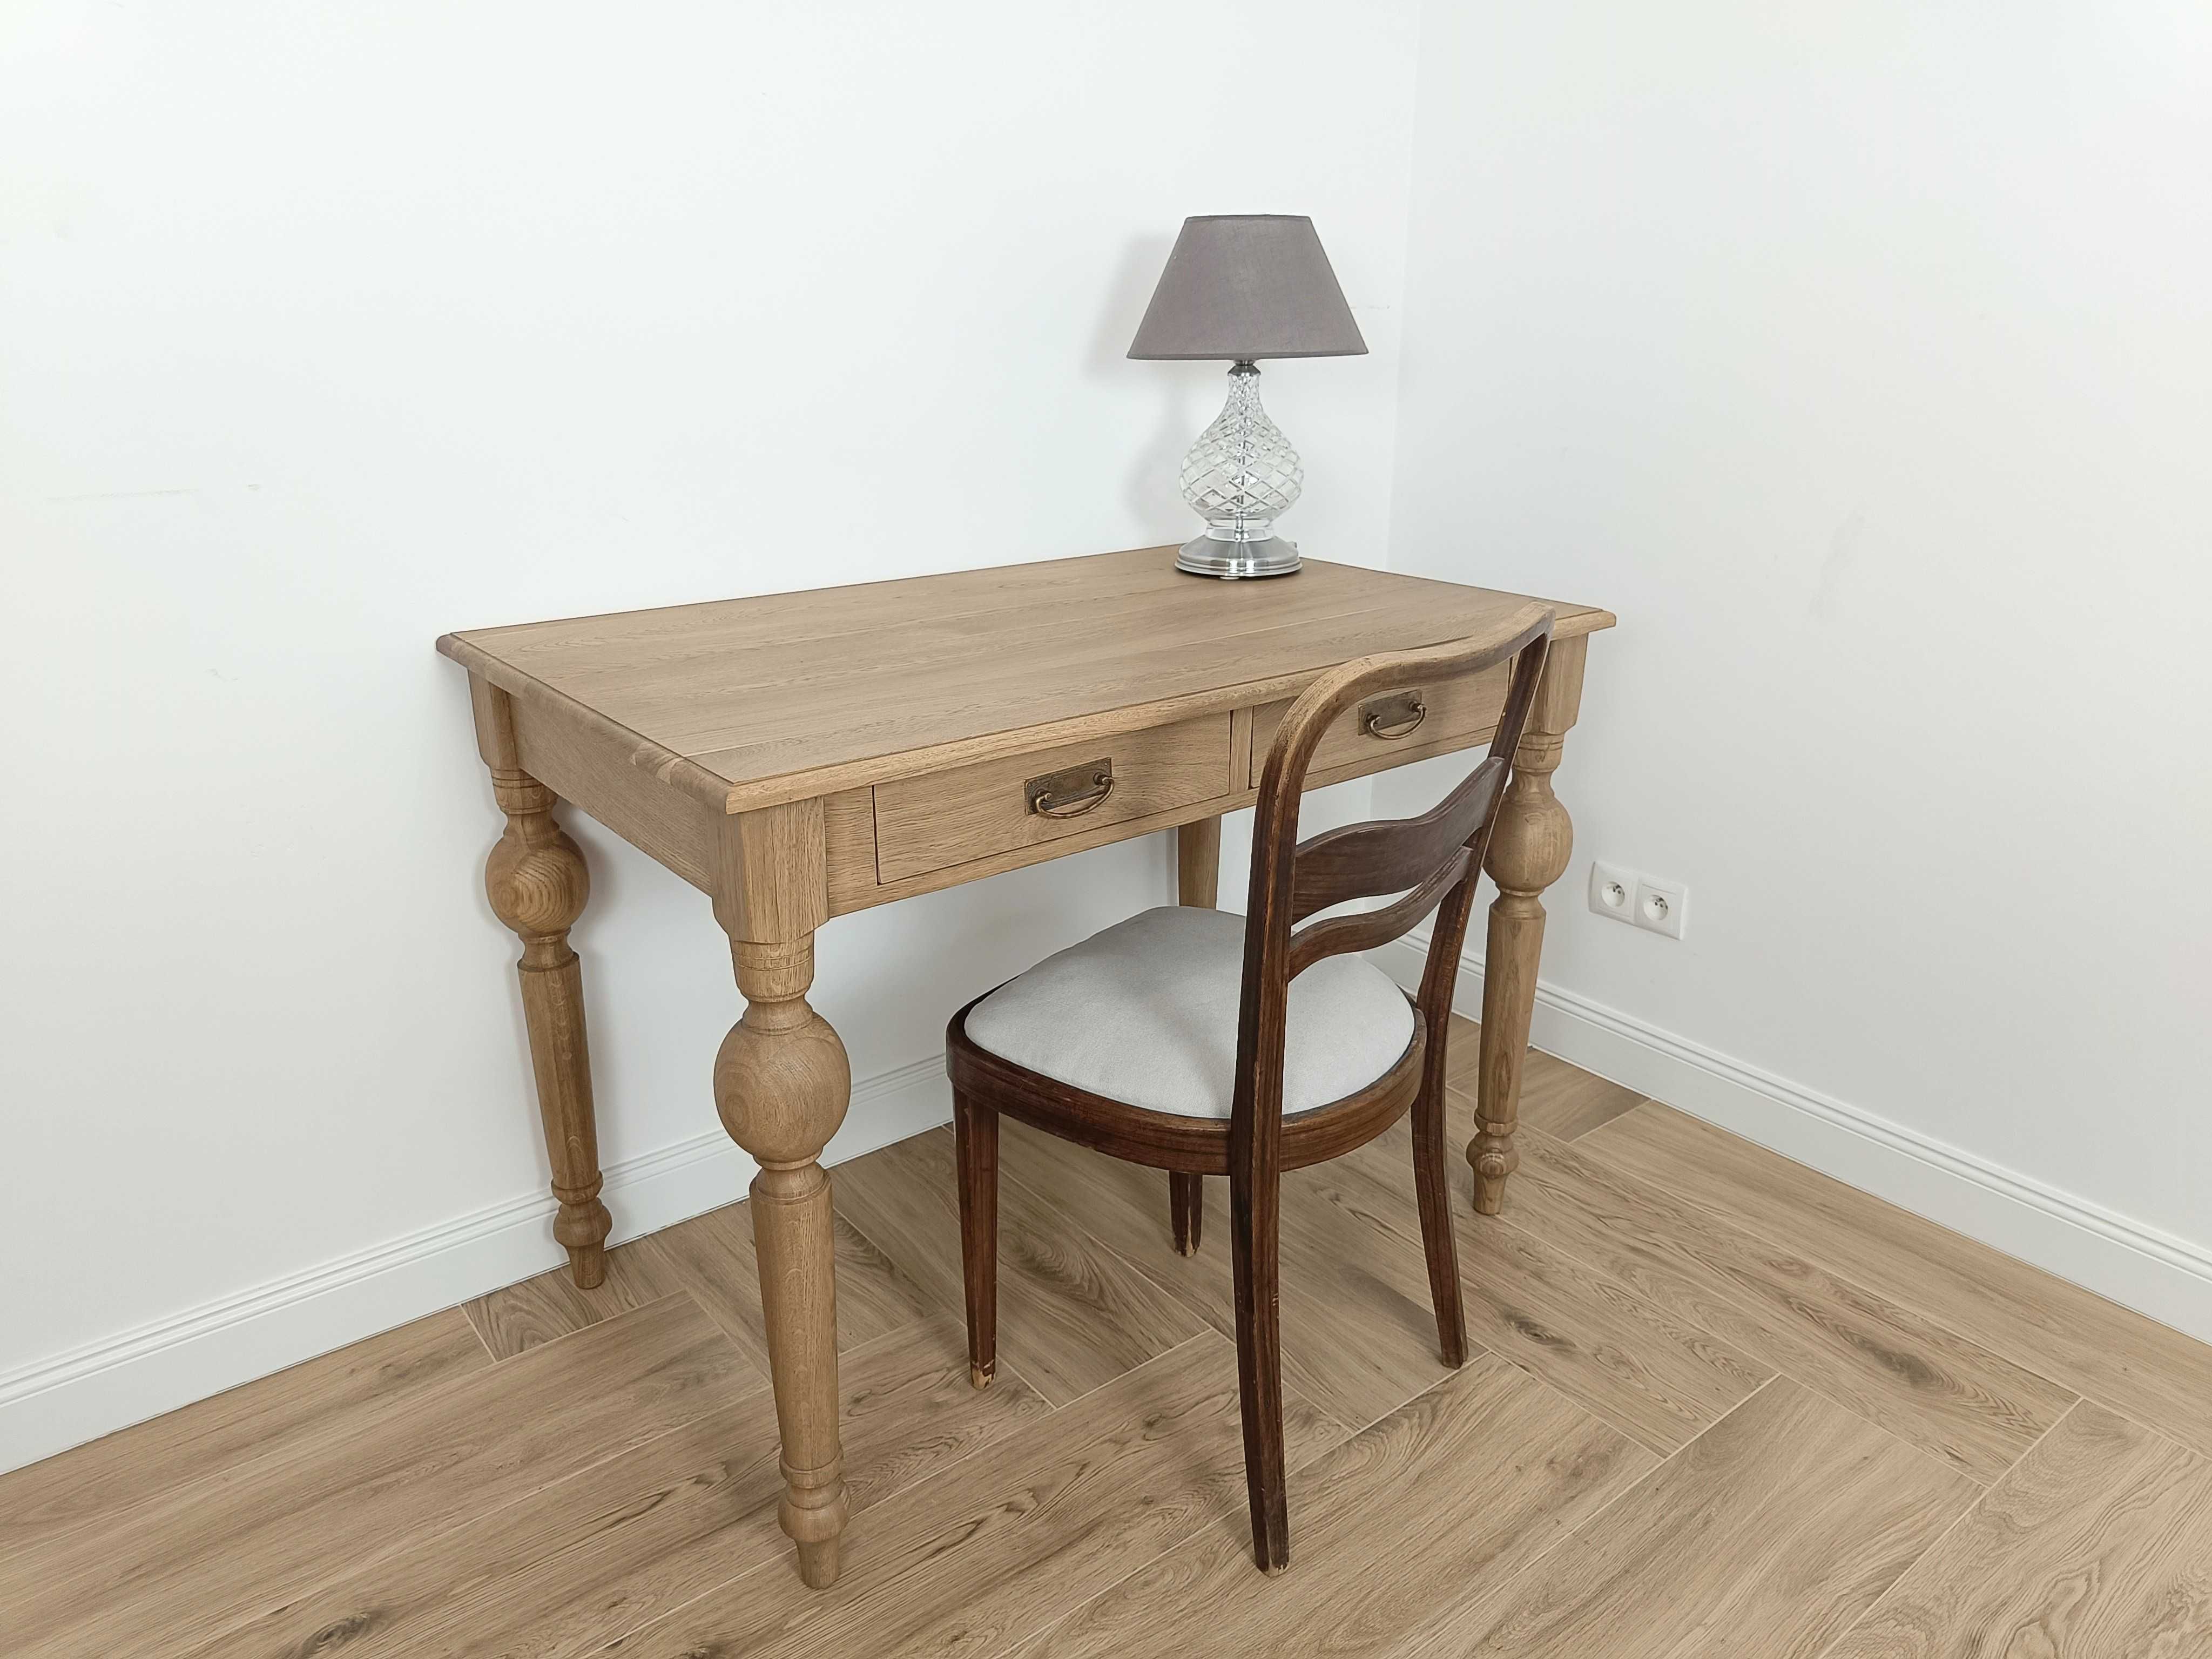 Stół biurko 110/70 dębowy stylizowany na stary antyk lity dąb